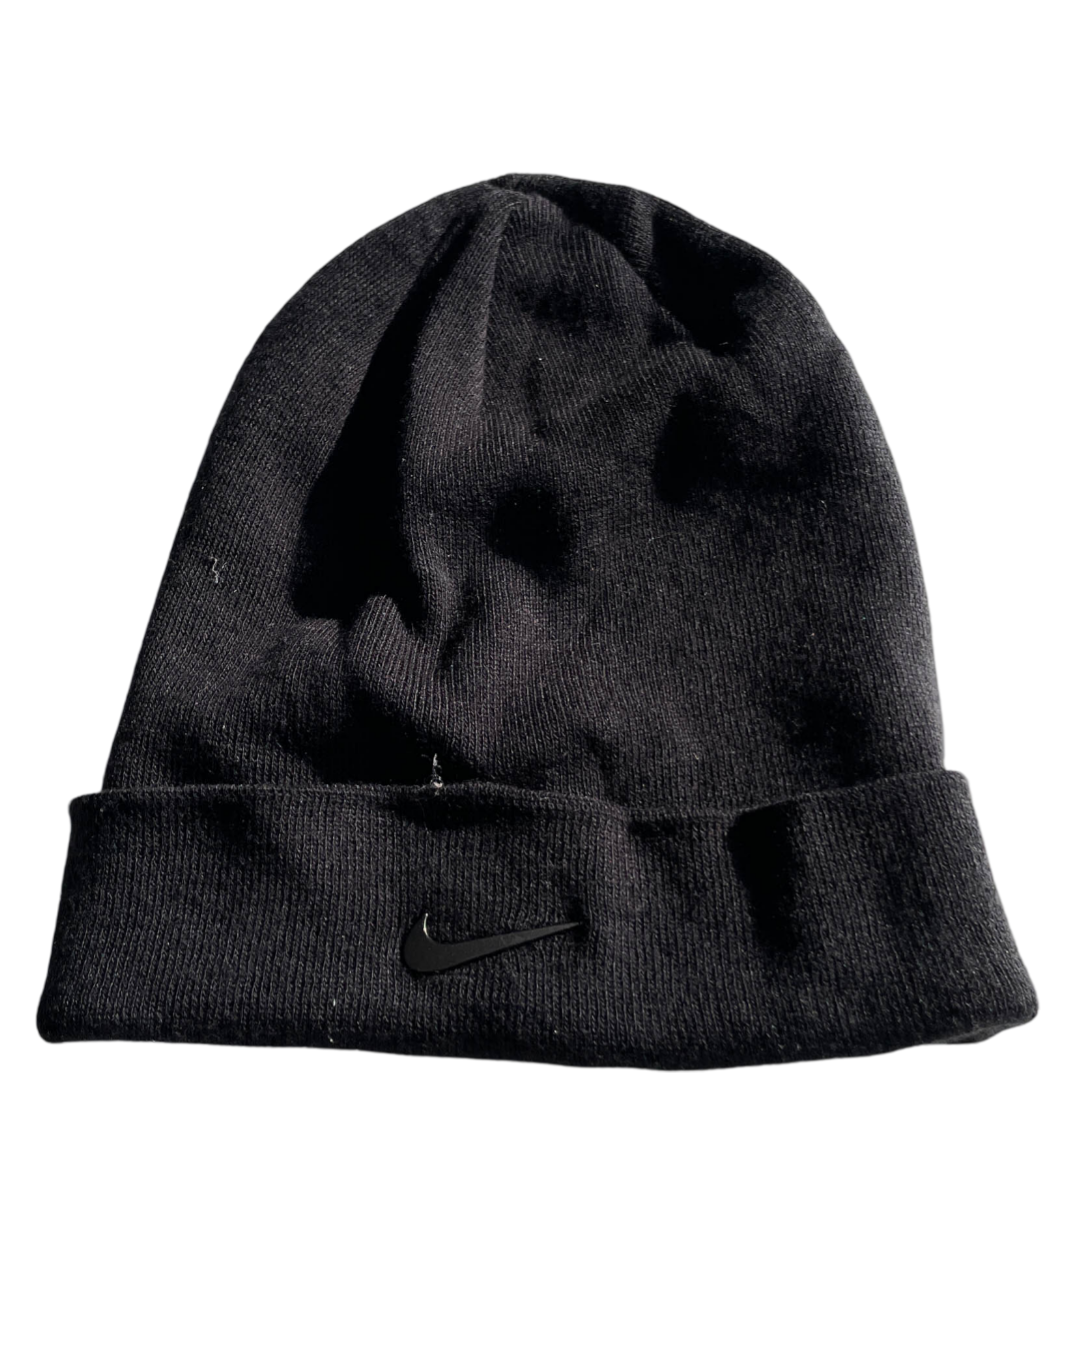 Vintage Nike Golf Beanie Cap Hat in black|SKU 5065